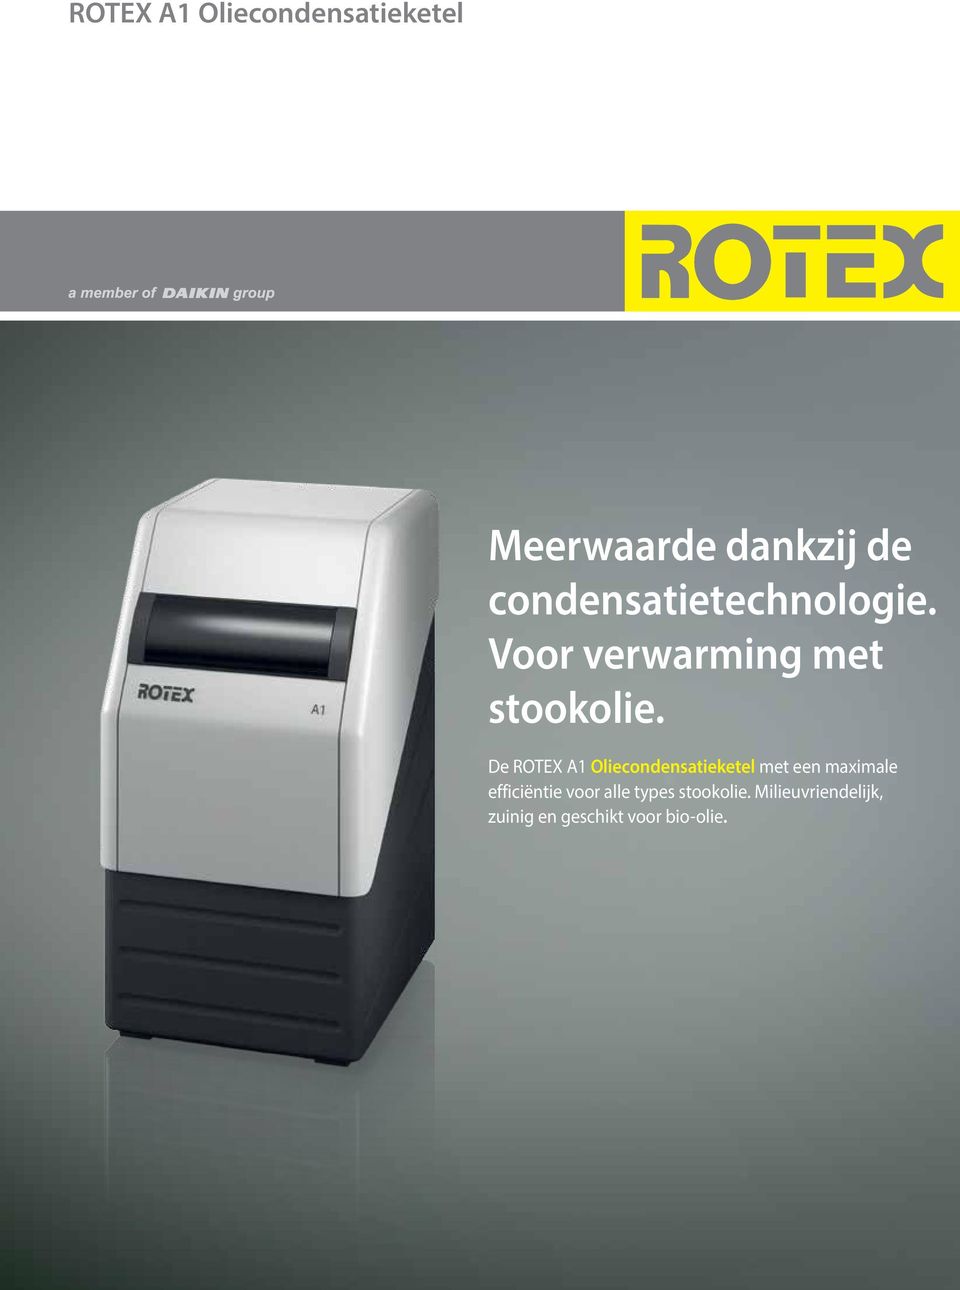 De ROTEX A1 Oliecondensatieketel met een maximale efficiëntie